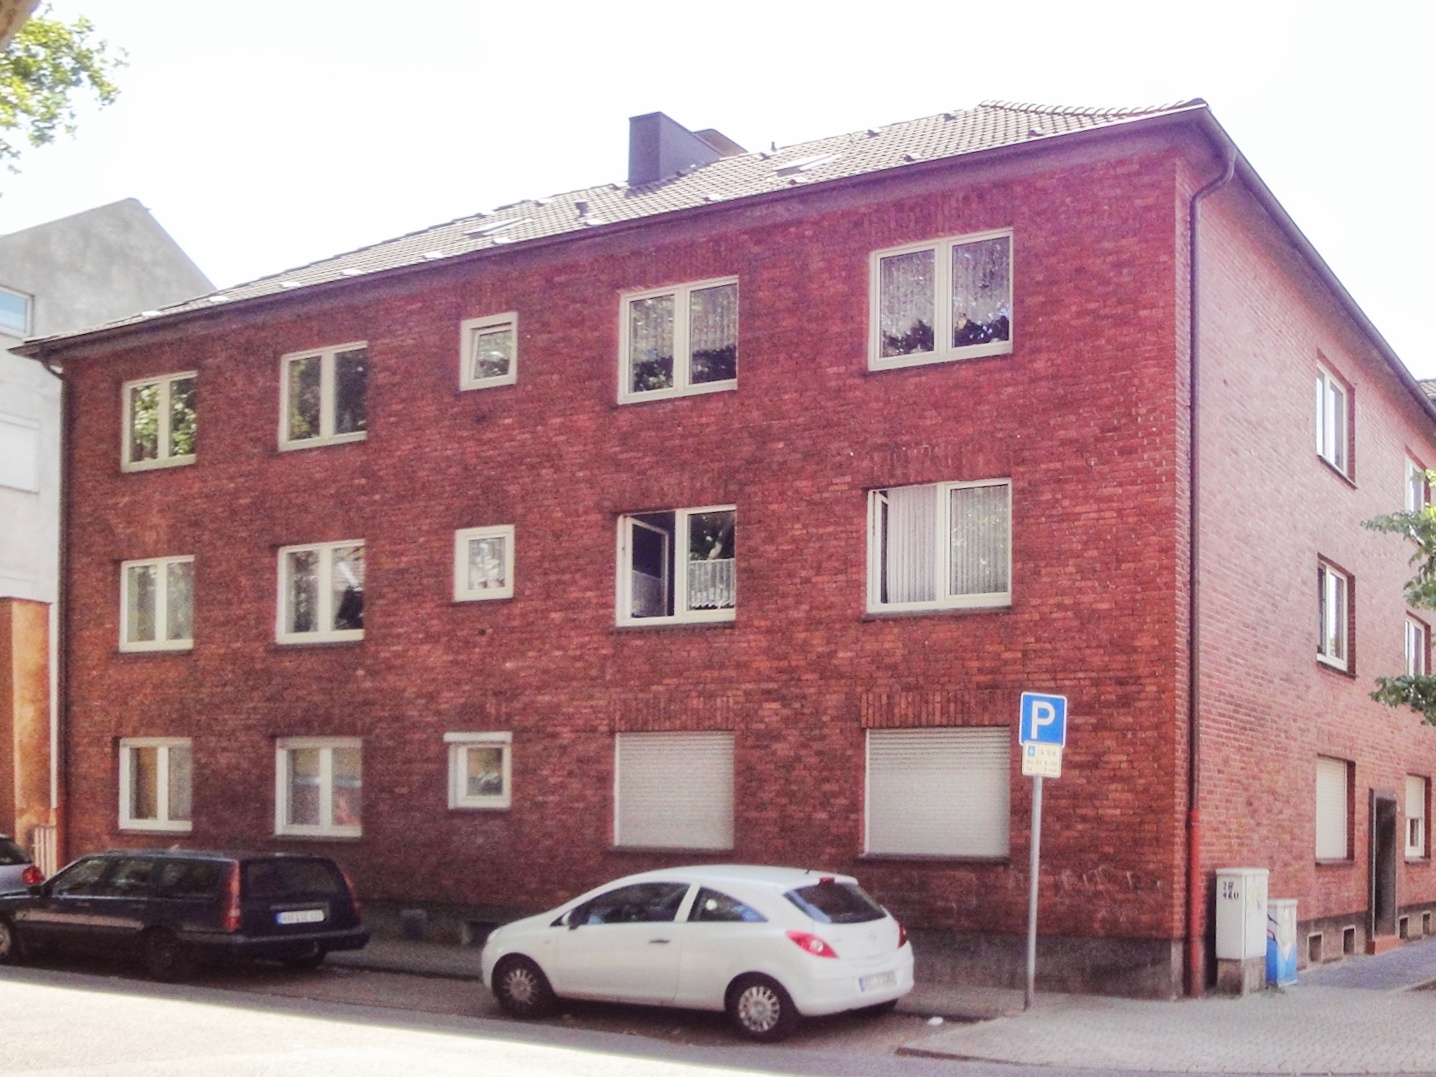 Immobilienmakler Oberhausen - Bild eines Mehrfamilienhauses in Oberhausen, an einer Kreuzung, über Ecke aufgenommen mit roten Ziegel.